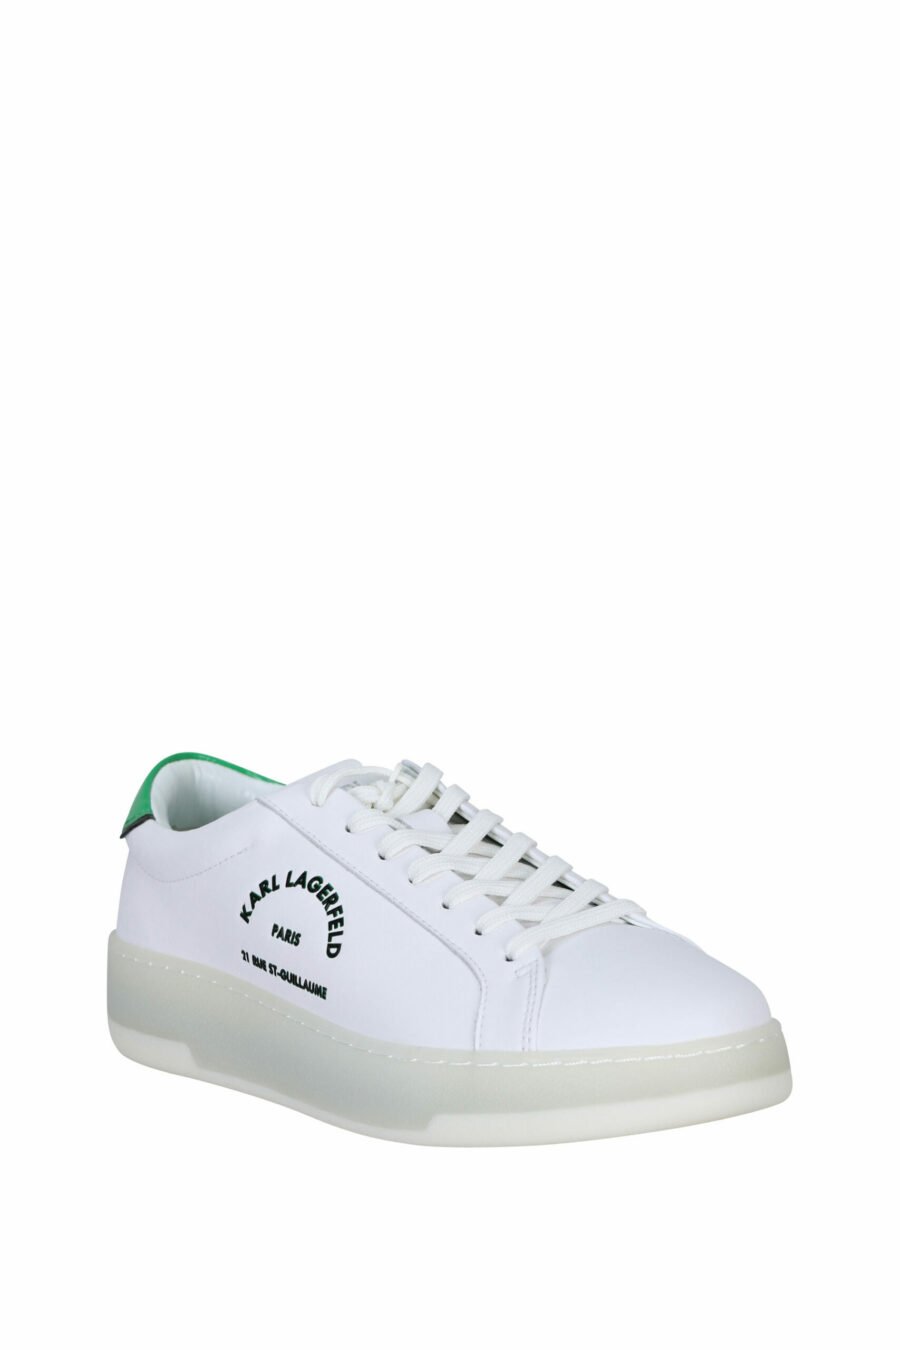 Zapatillas blancas con detalle verde y logo "st rue guillaume" - 5059529291289 1 scaled